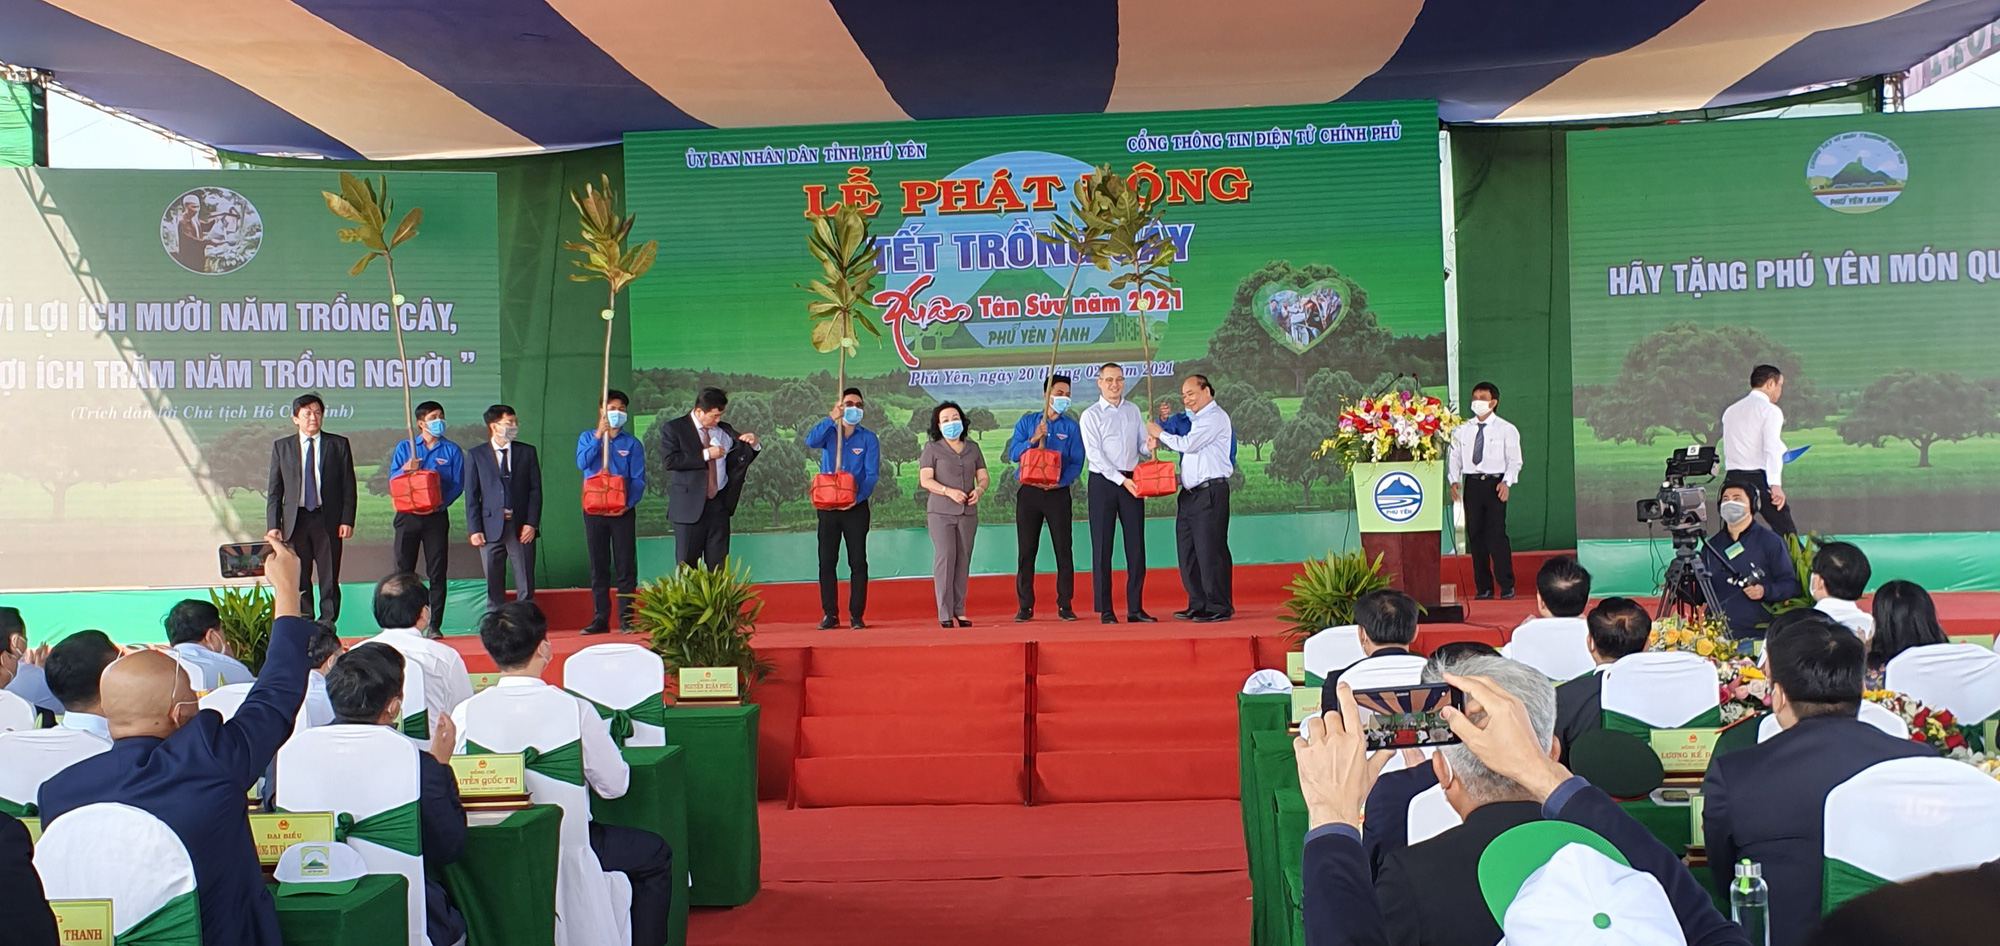 Thủ tướng Nguyễn Xuân Phúc phát động Tết trồng cây tại Phú Yên - Ảnh 4.